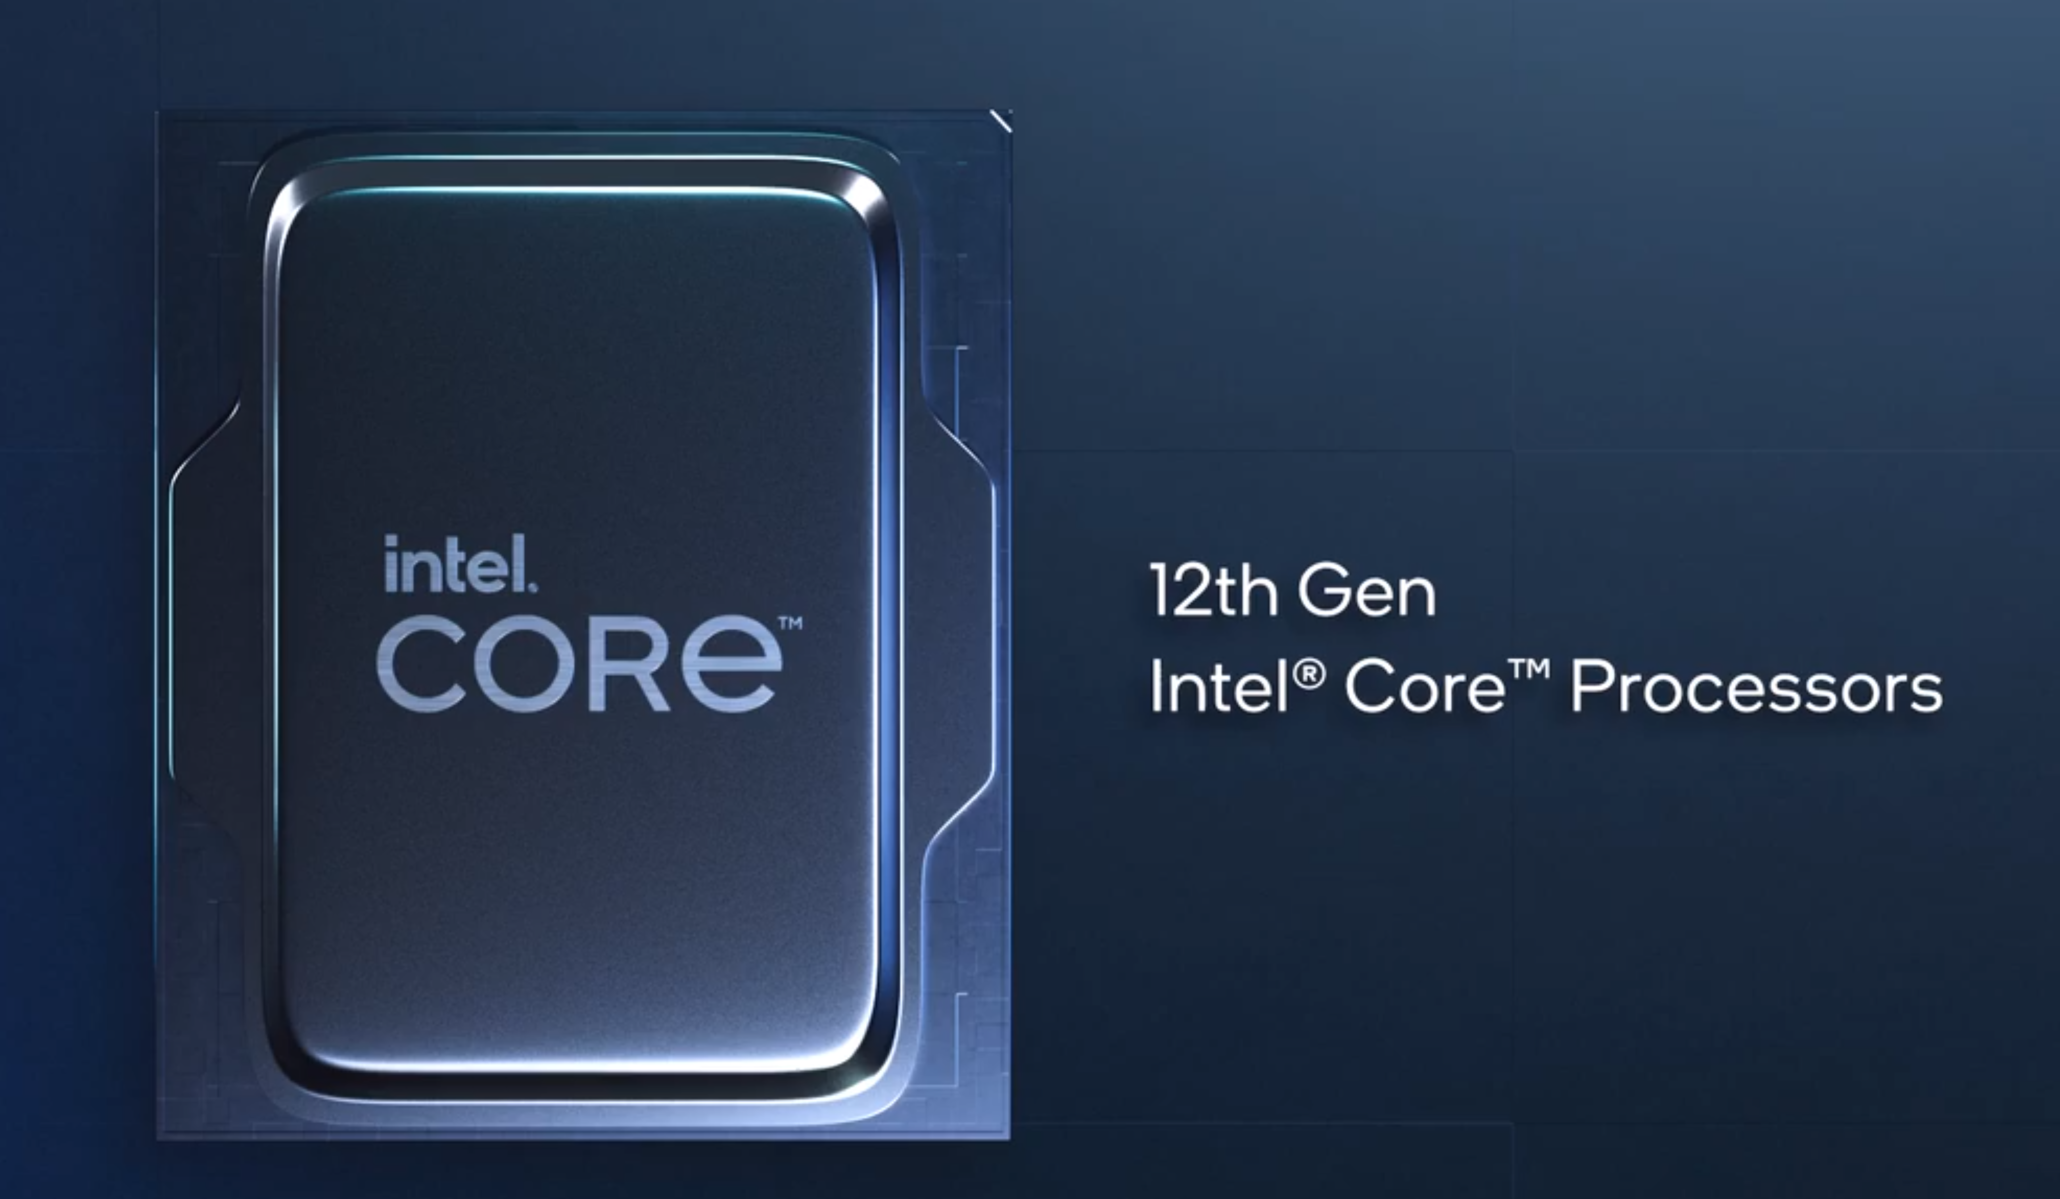 Procesor Intel Core i9-12900 je špeciálne určený pre základné dosky s päticou LGA1700 z radu Intel 600 Series, kedy sa pýši 12 jadrami s maximálnym taktom až 4,9 GHz vďaka TB 3.0 technológii.